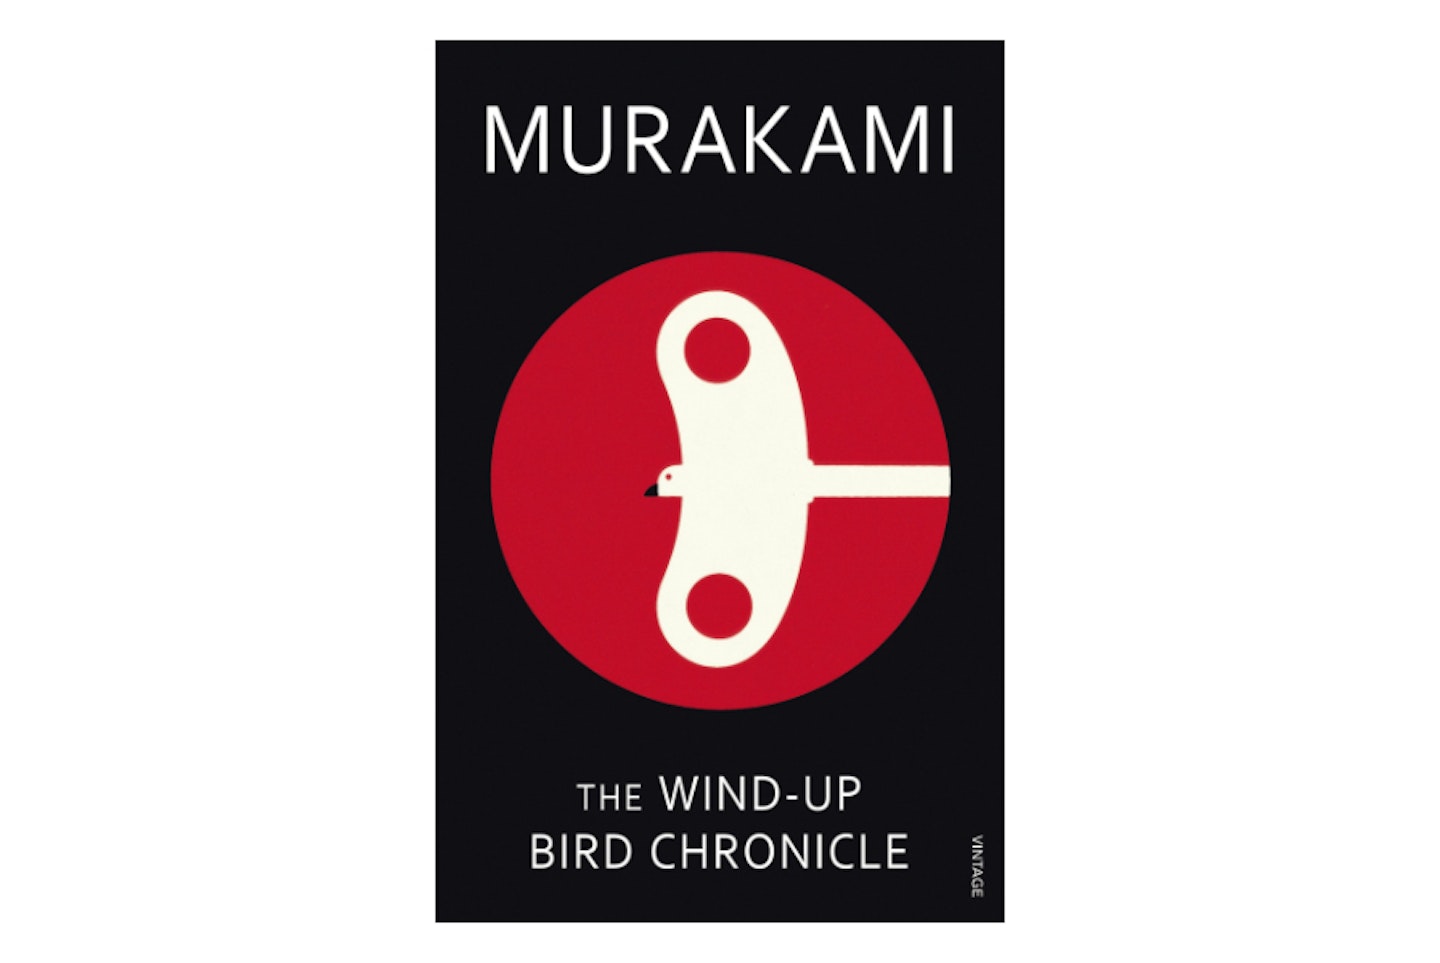 The Wind-Up Bird Chronicles by Haruki Murakami